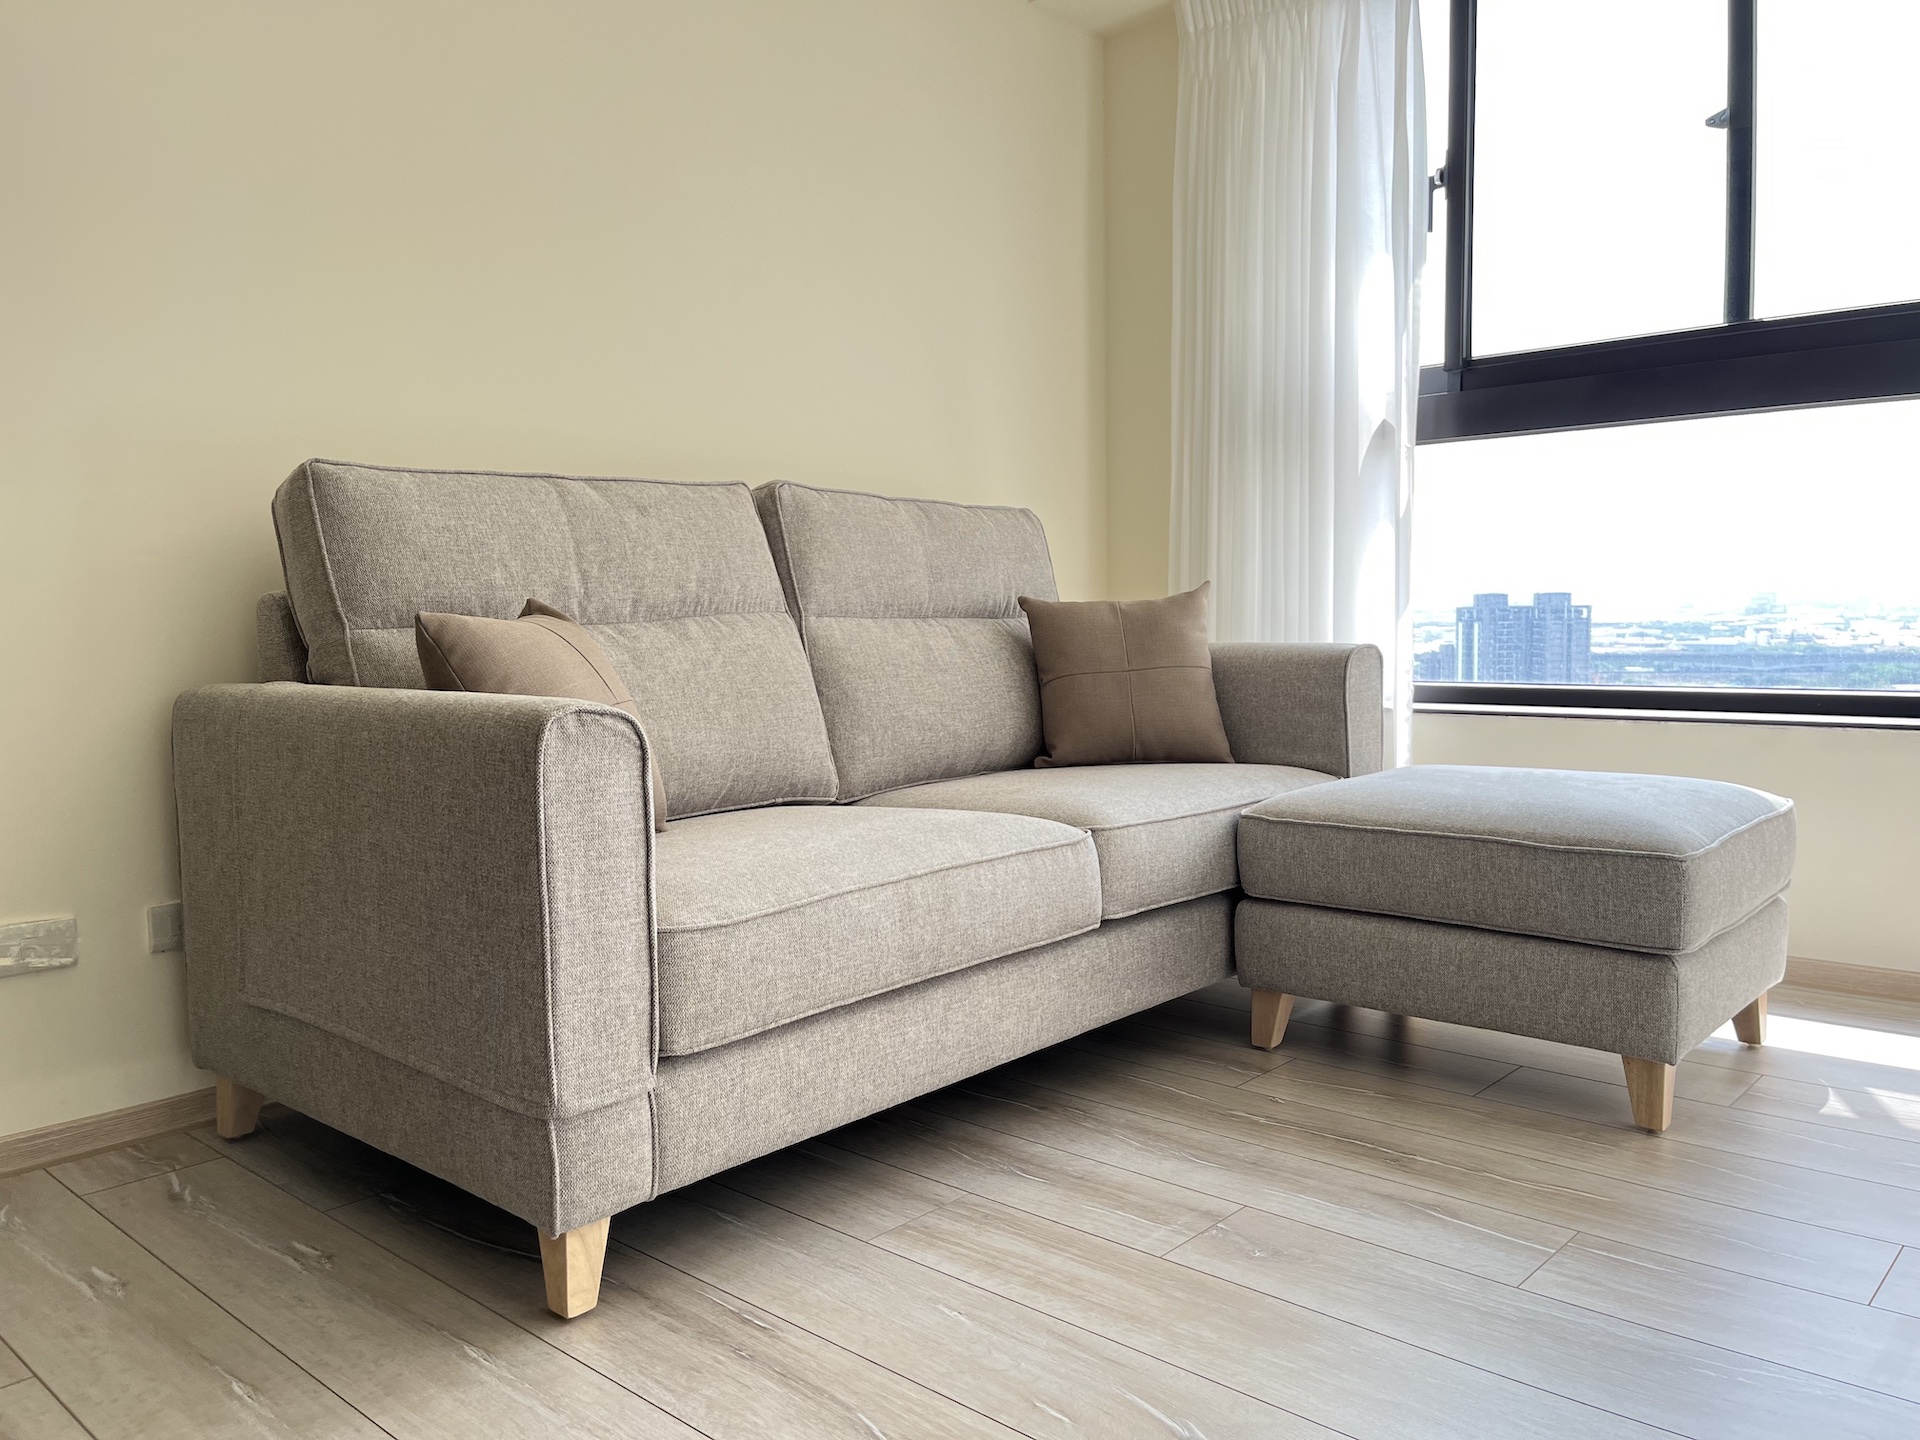 【客戶案例分享】台中東區三人座沙發訂製